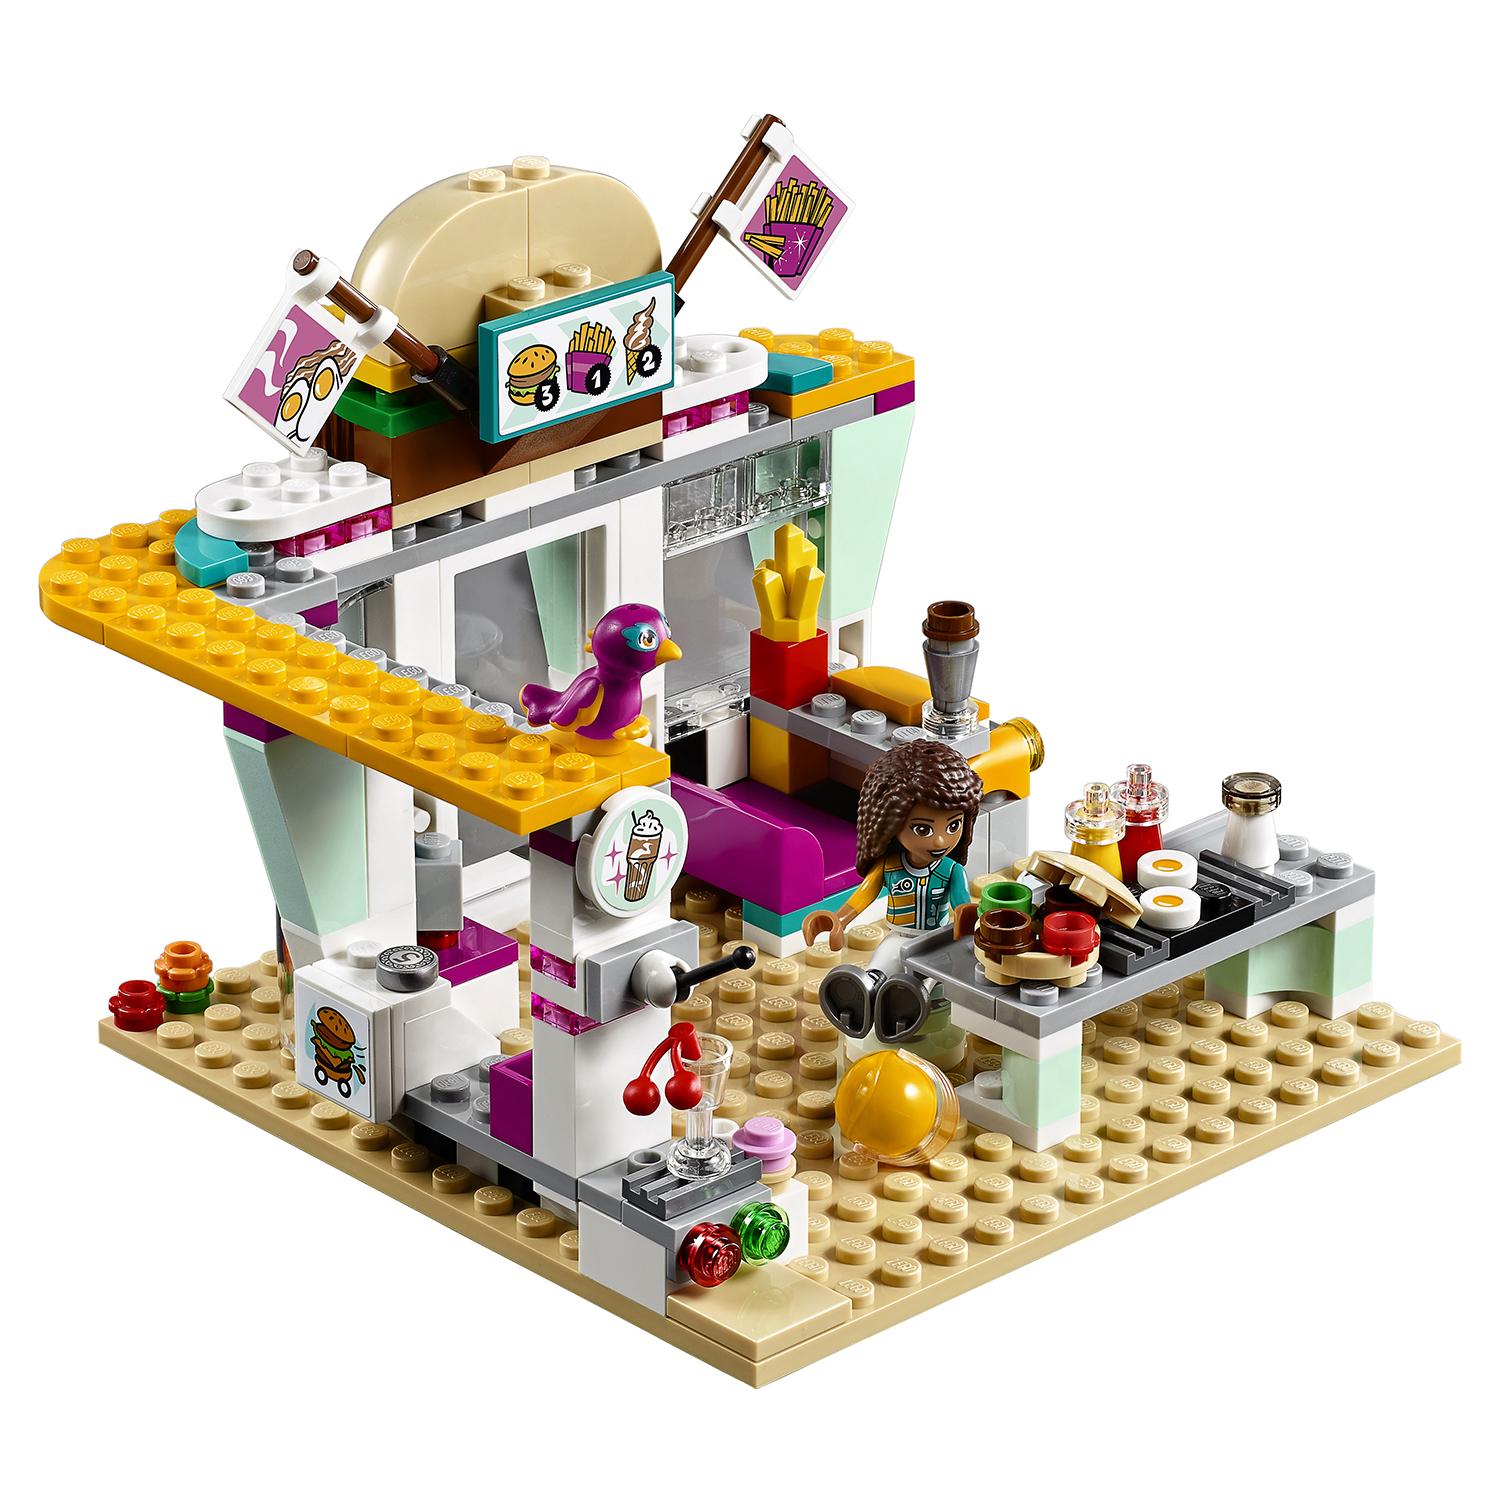 Lego Friends 41349 Передвижной ресторан